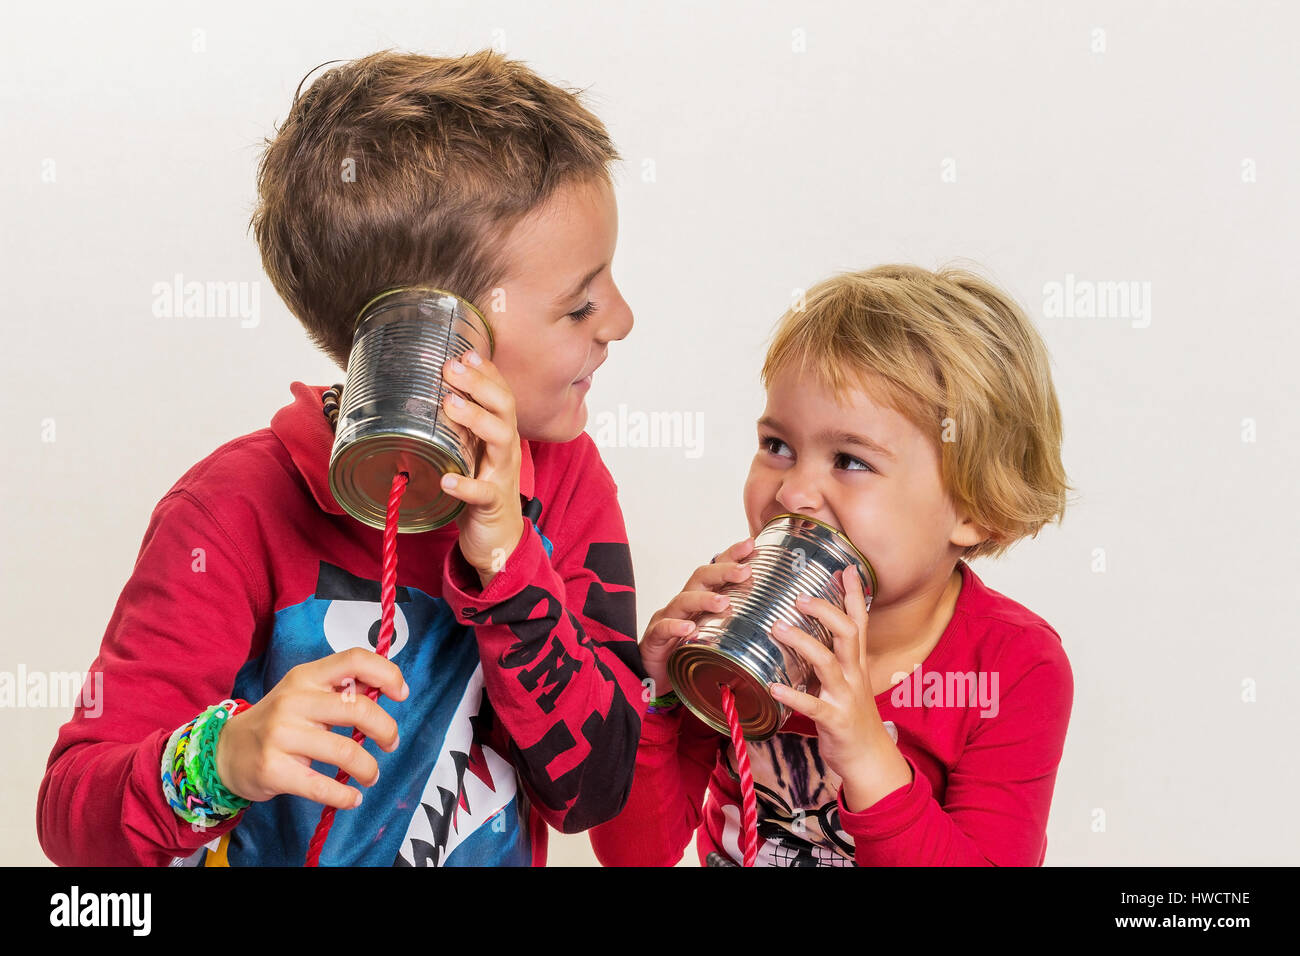 Two small children call up a phone from two tins., Zwei kleine Kinder telefonieren mit einem Telefon aus zwei Dosen. Stock Photo